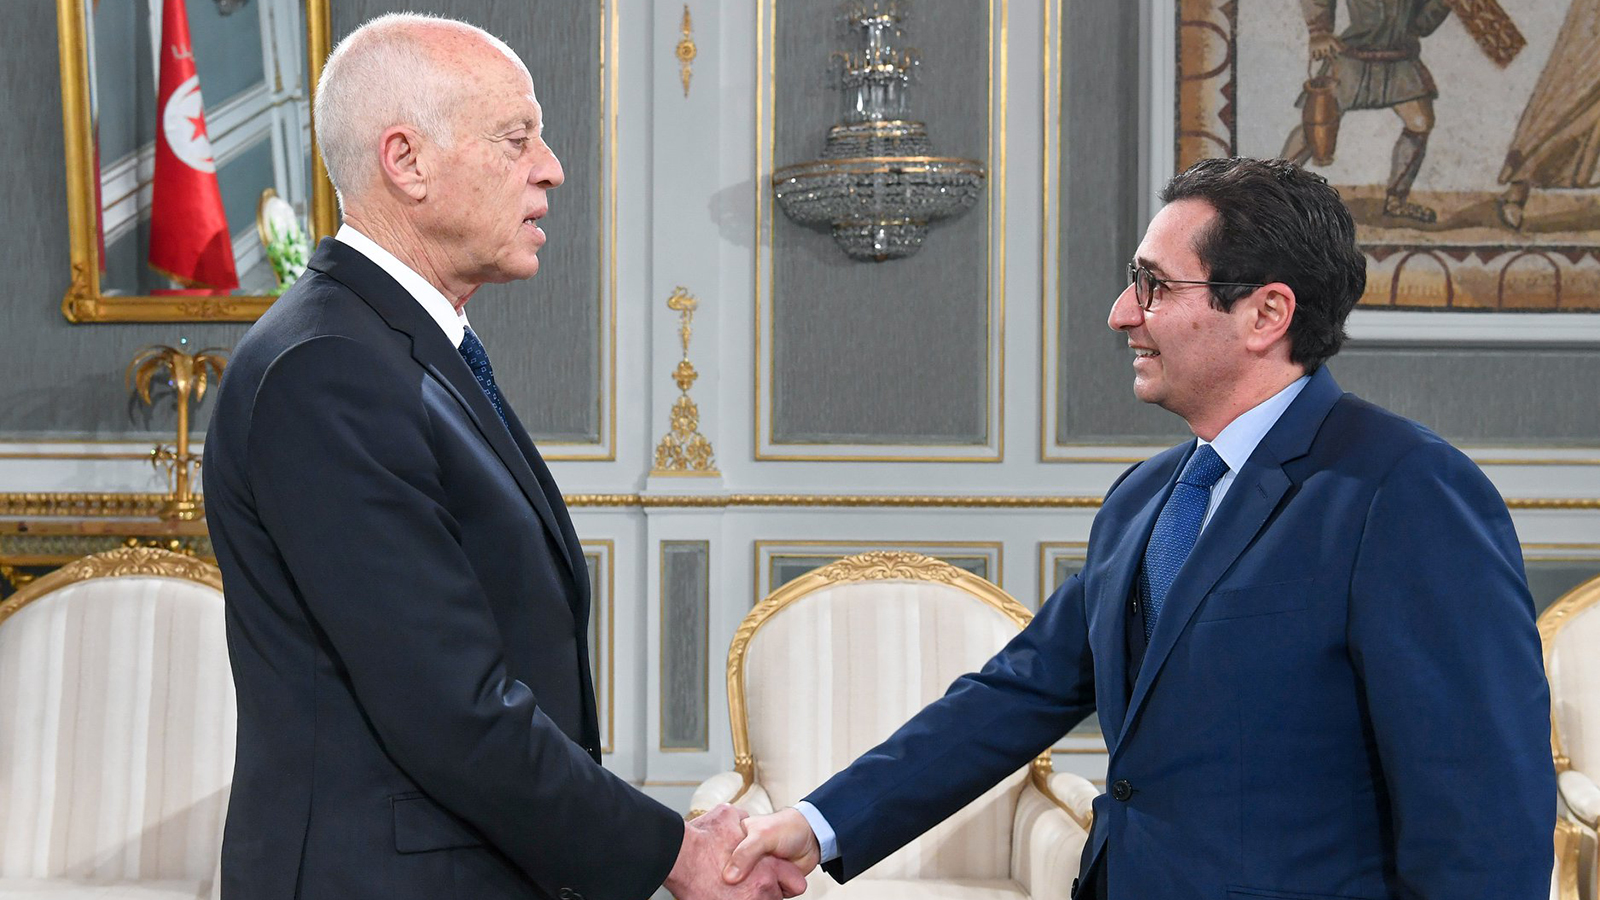 ‪الرئيس قيس سعيد يجري مشاورات مع وزير المالية السابق فاضل عبد الكافي‬ بقصر قرطاج في العاصمة تونس(الجزيرة)